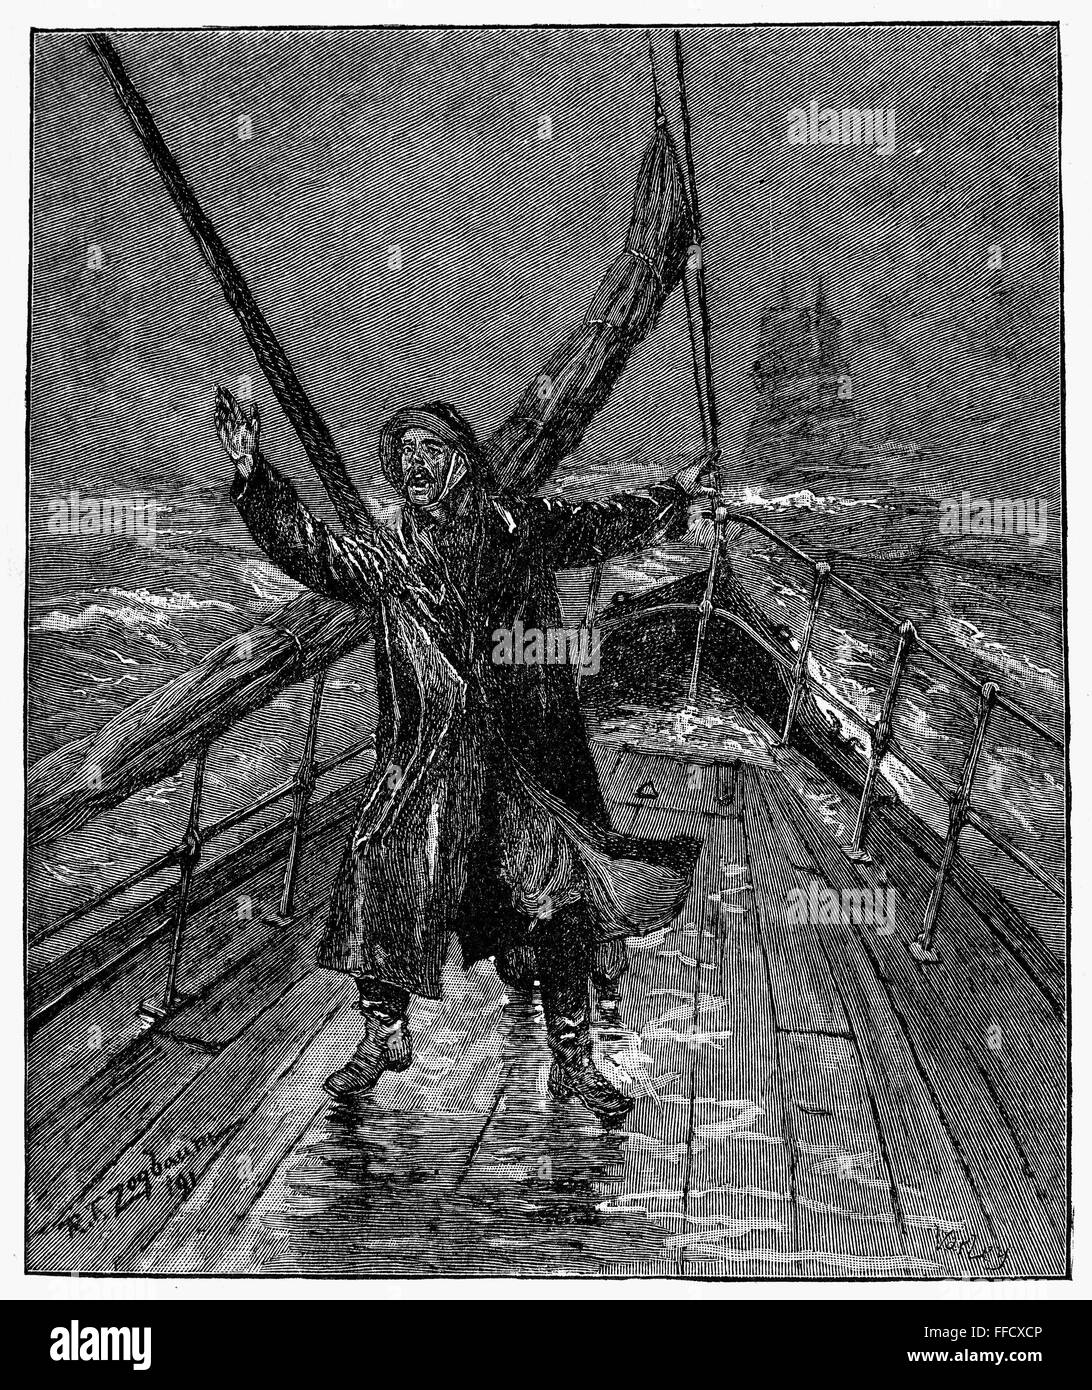 Barco: plataforma mirador, 1891. /N'Dira por delante." El grabado en madera, inglés, 1891. Foto de stock